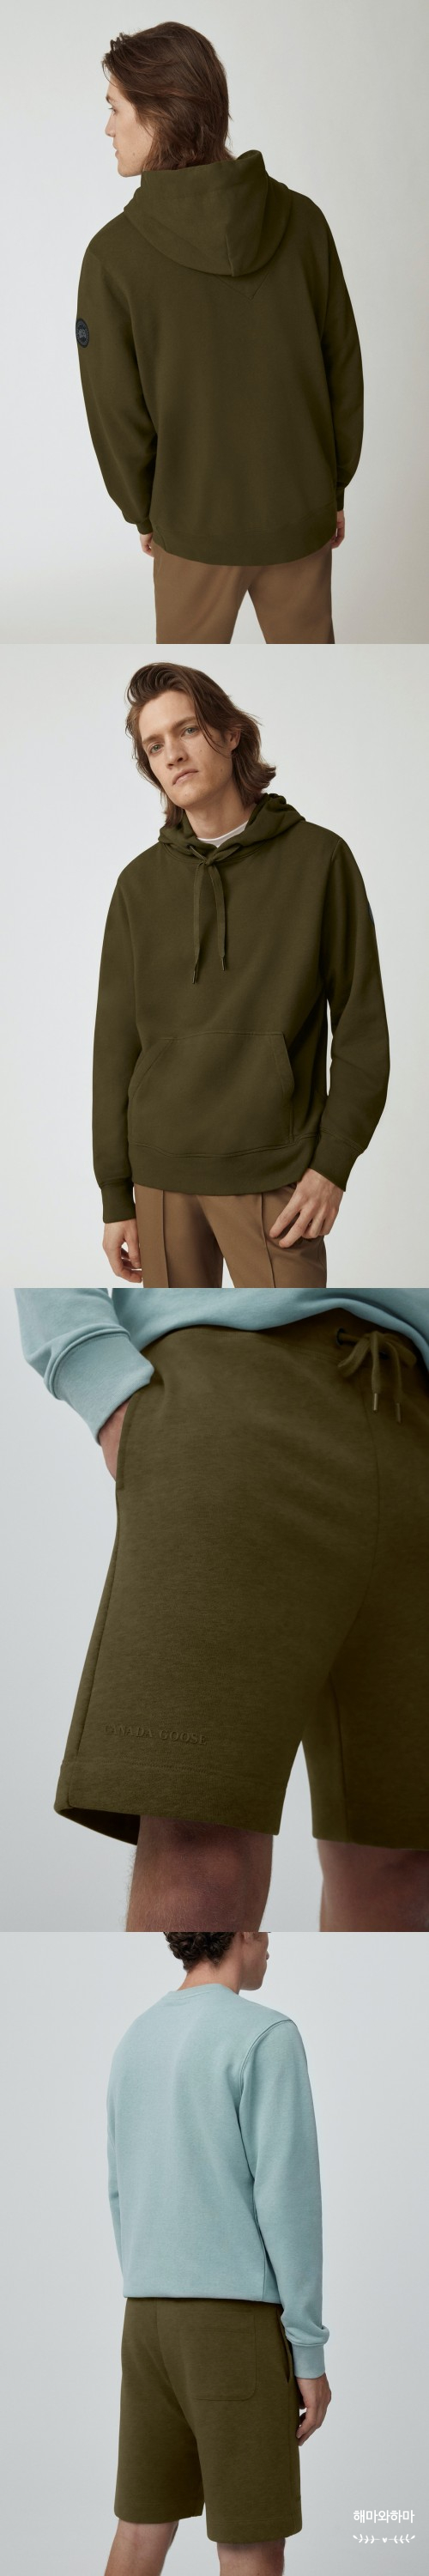 간절기 아우터 추천 + 캐나다구스 재킷 남자 워크웨어 자켓 황희찬 화보 패션 구경해!